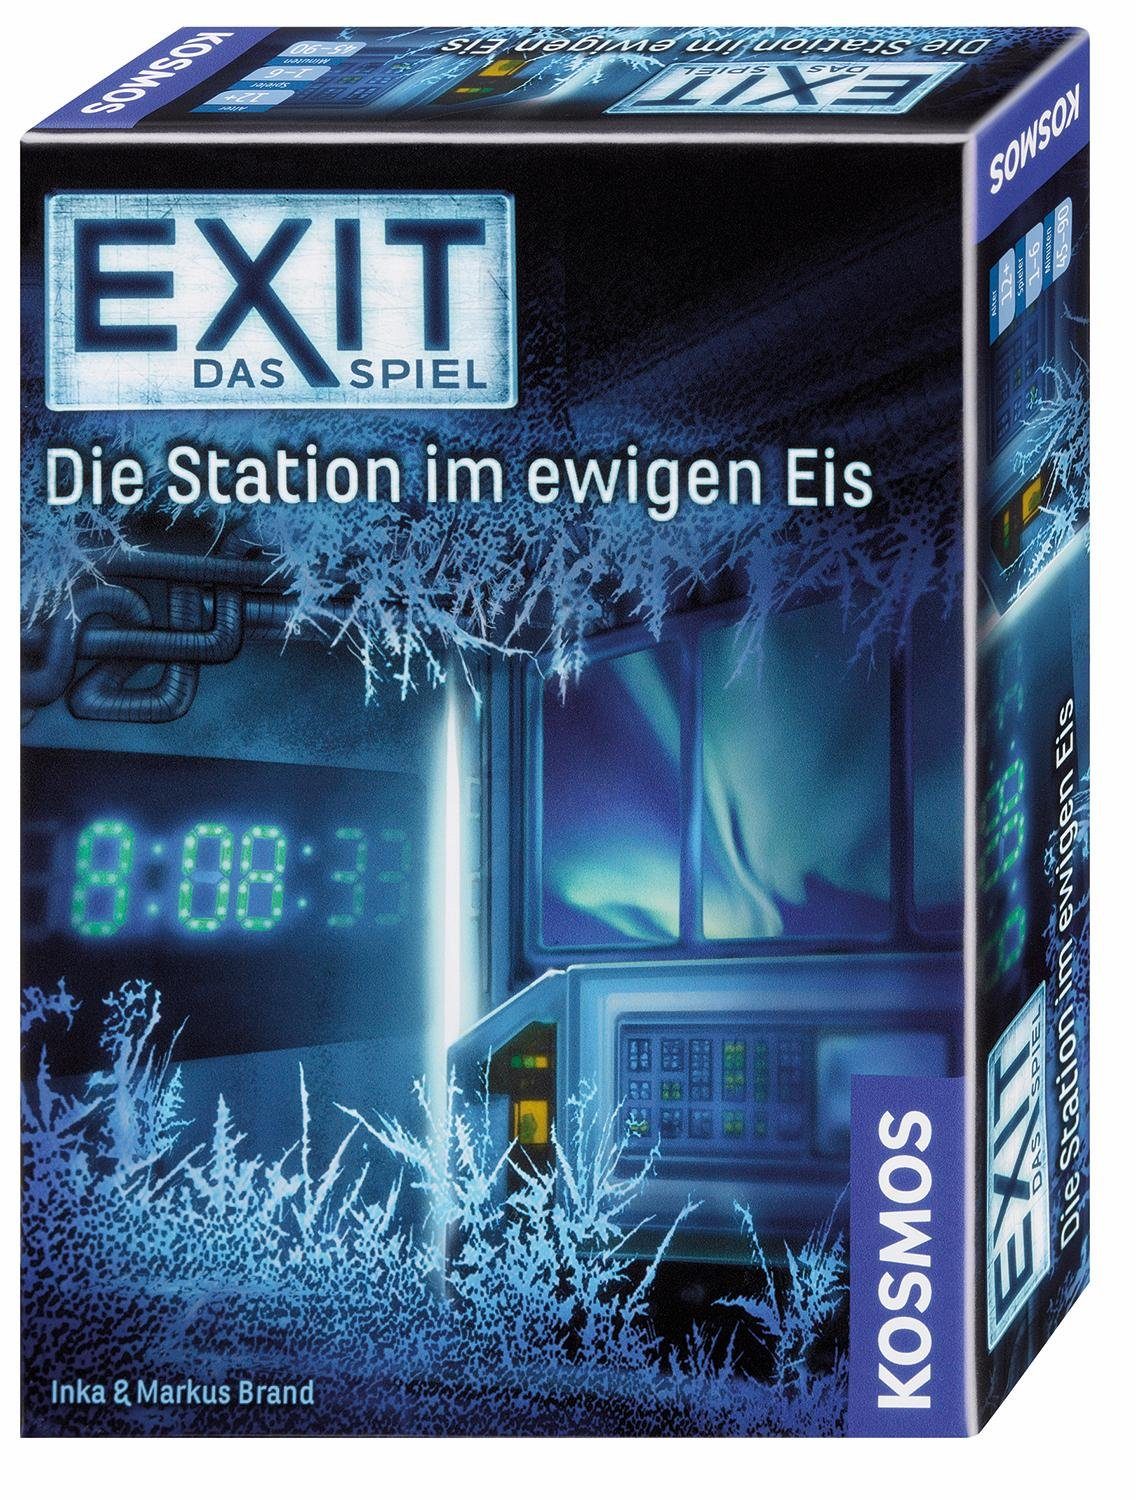 Kosmos Spiel, Exit Das Eis, im Station in Spiel, Made Germany Die ewigen